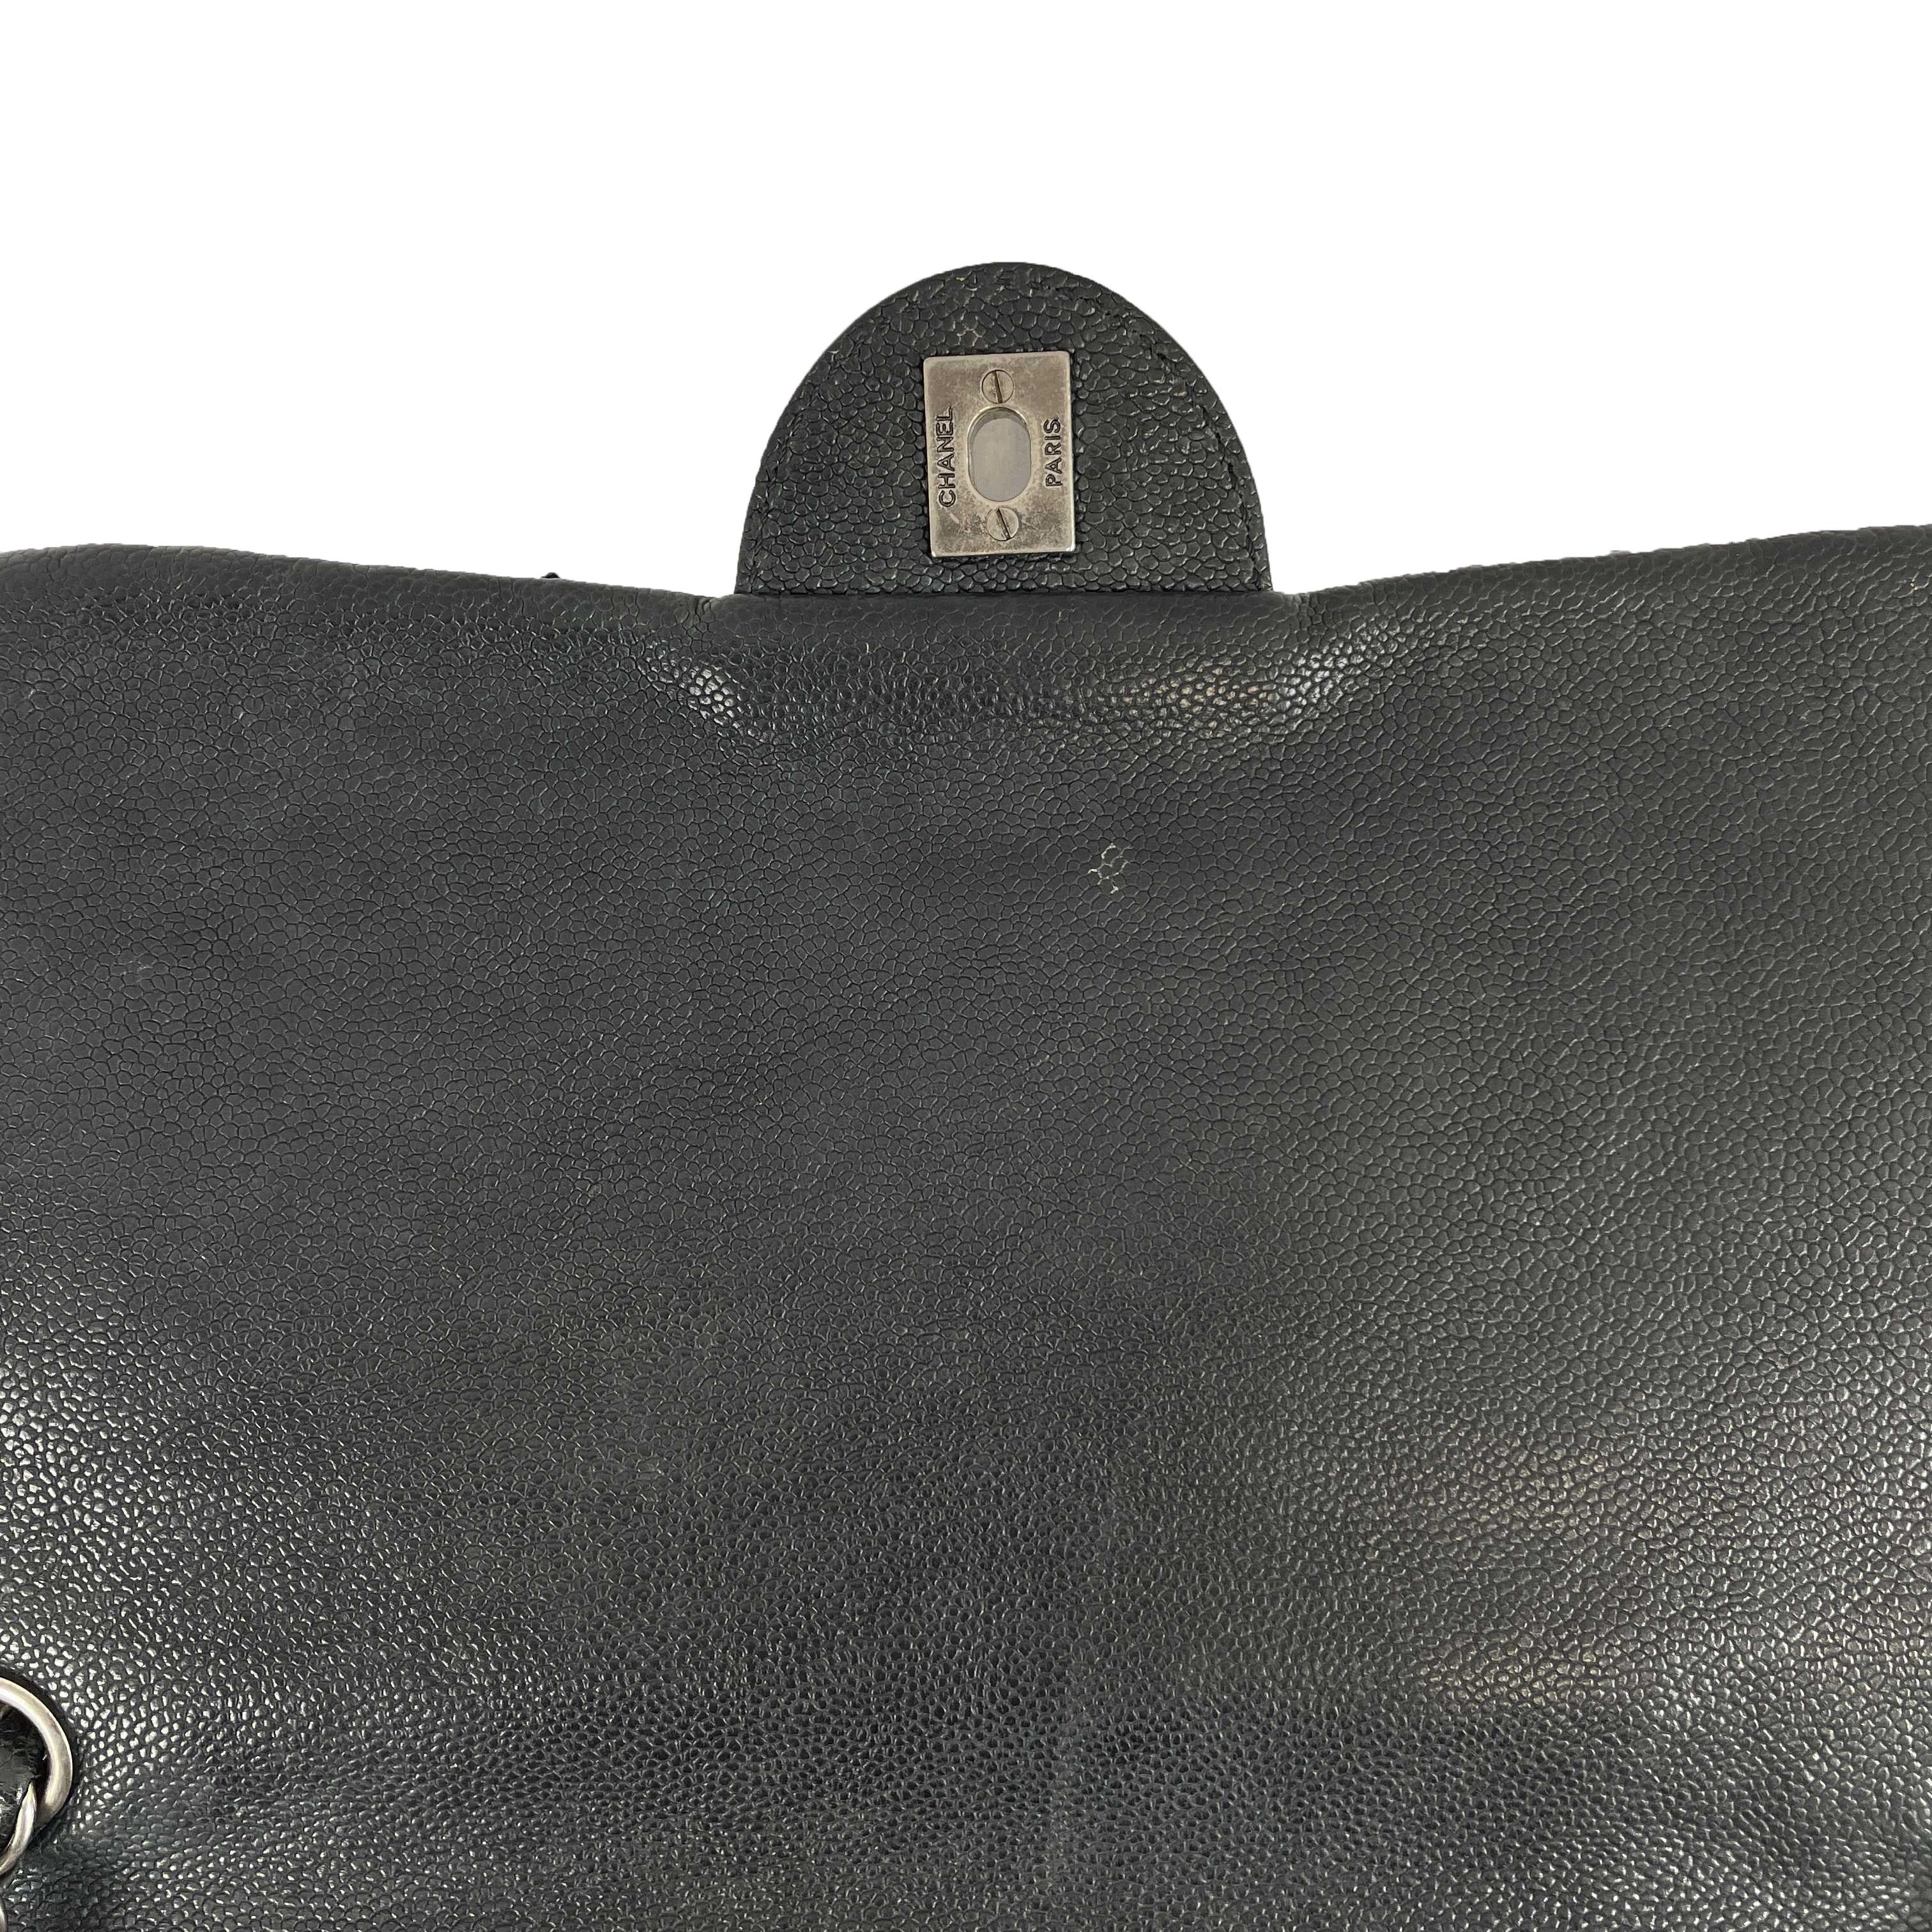 	CHANEL - CC Ligne Flap Large Bag Black / Silver Caviar Leather Shoulder Bag 12